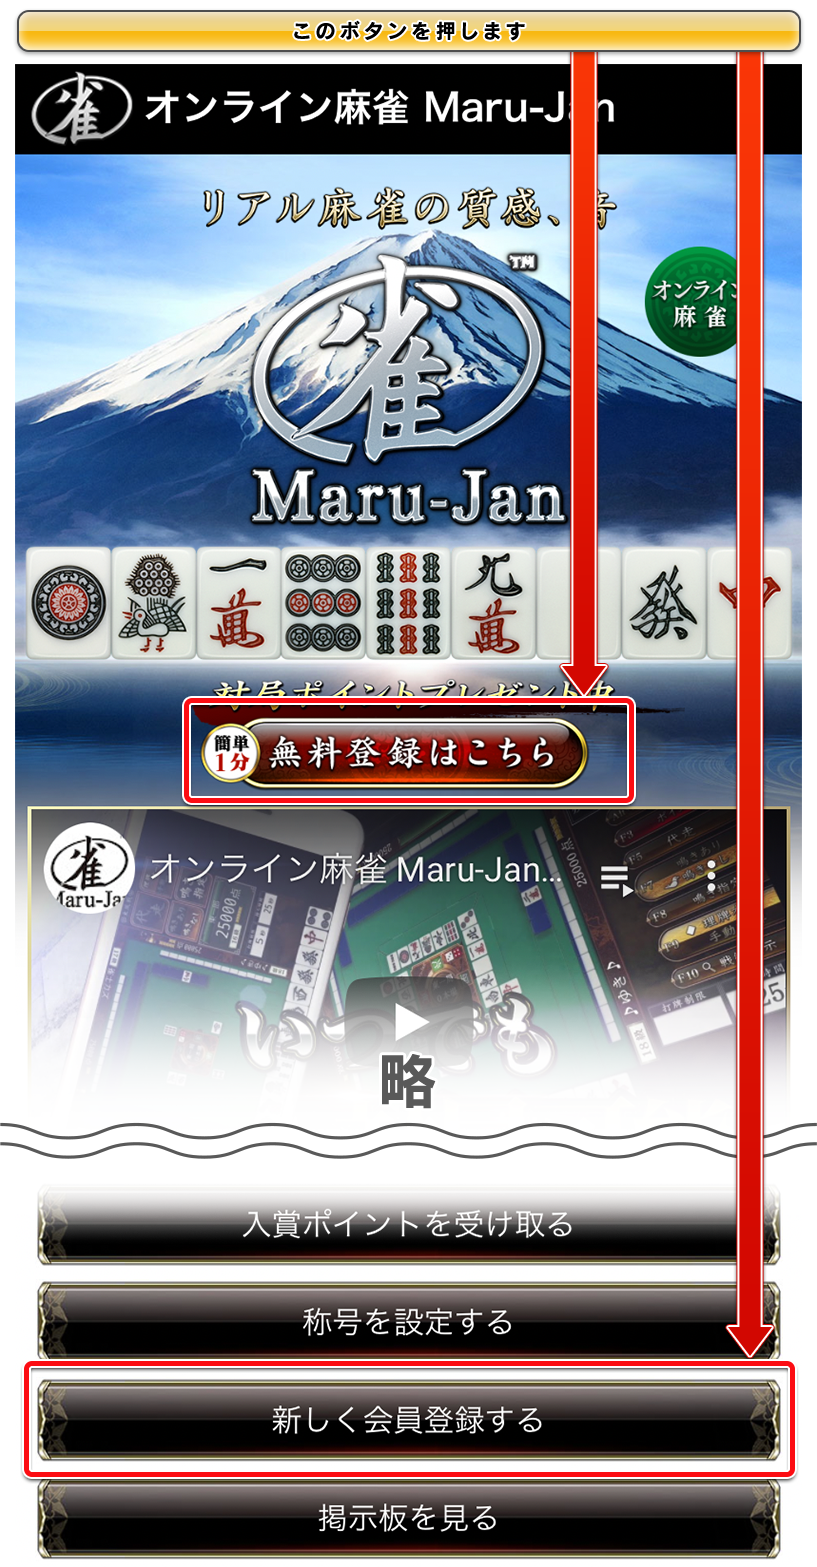 Maru-Jan 公式サイトトップページイメージ